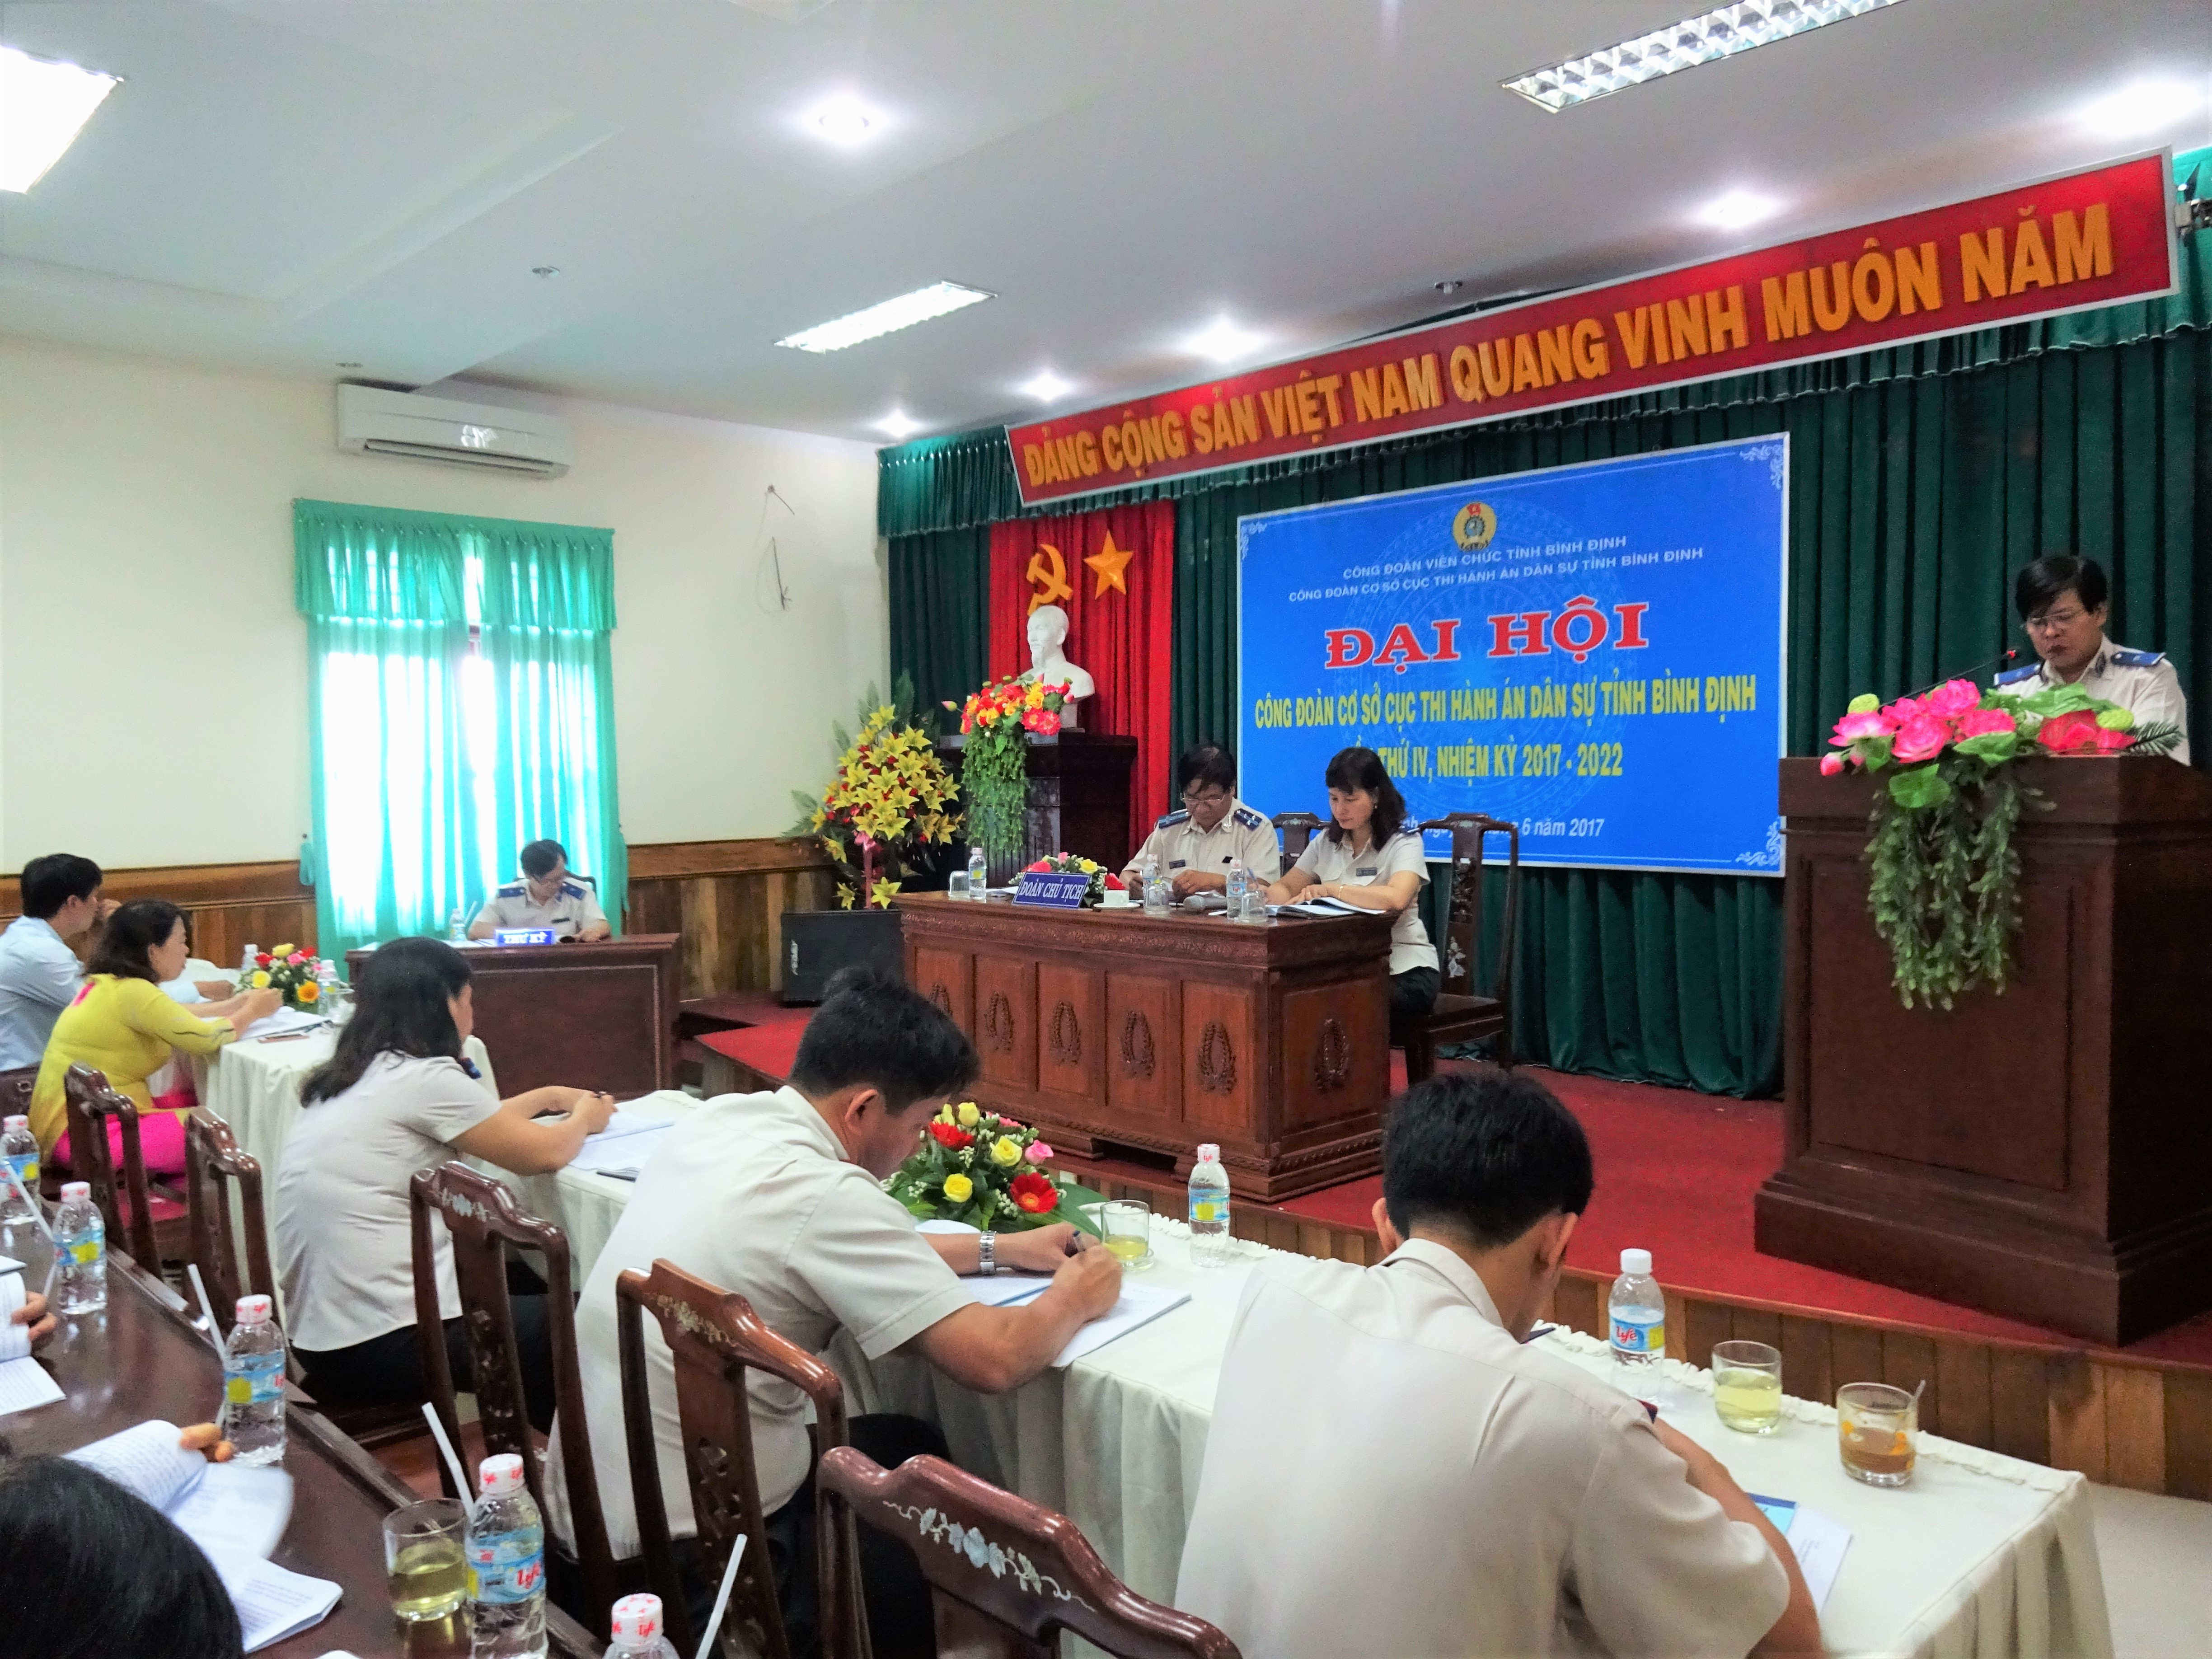 Đại hội Công đoàn cơ sở Cục Thi hành án dân sự tỉnh Bình Định, lần thứ 4, nhiệm kỳ 2017 – 2022